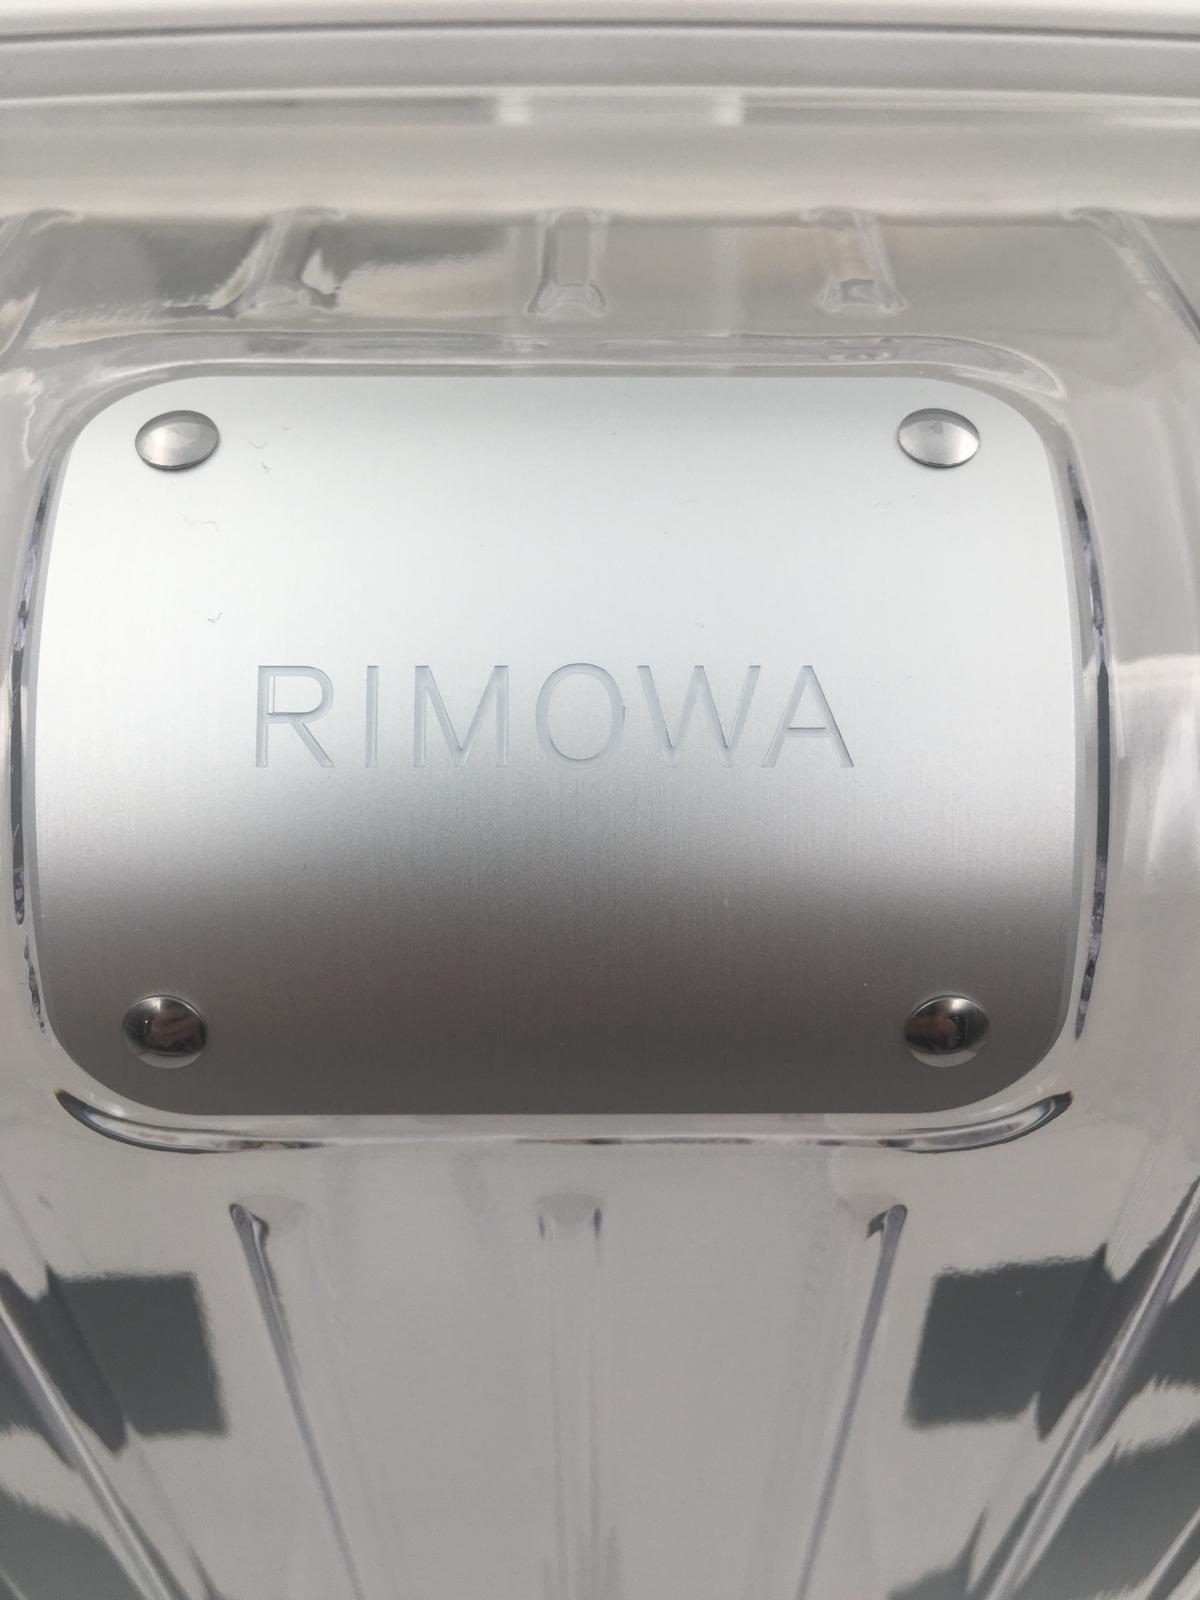 Off-White x Rimowa See Through Black Suitcase